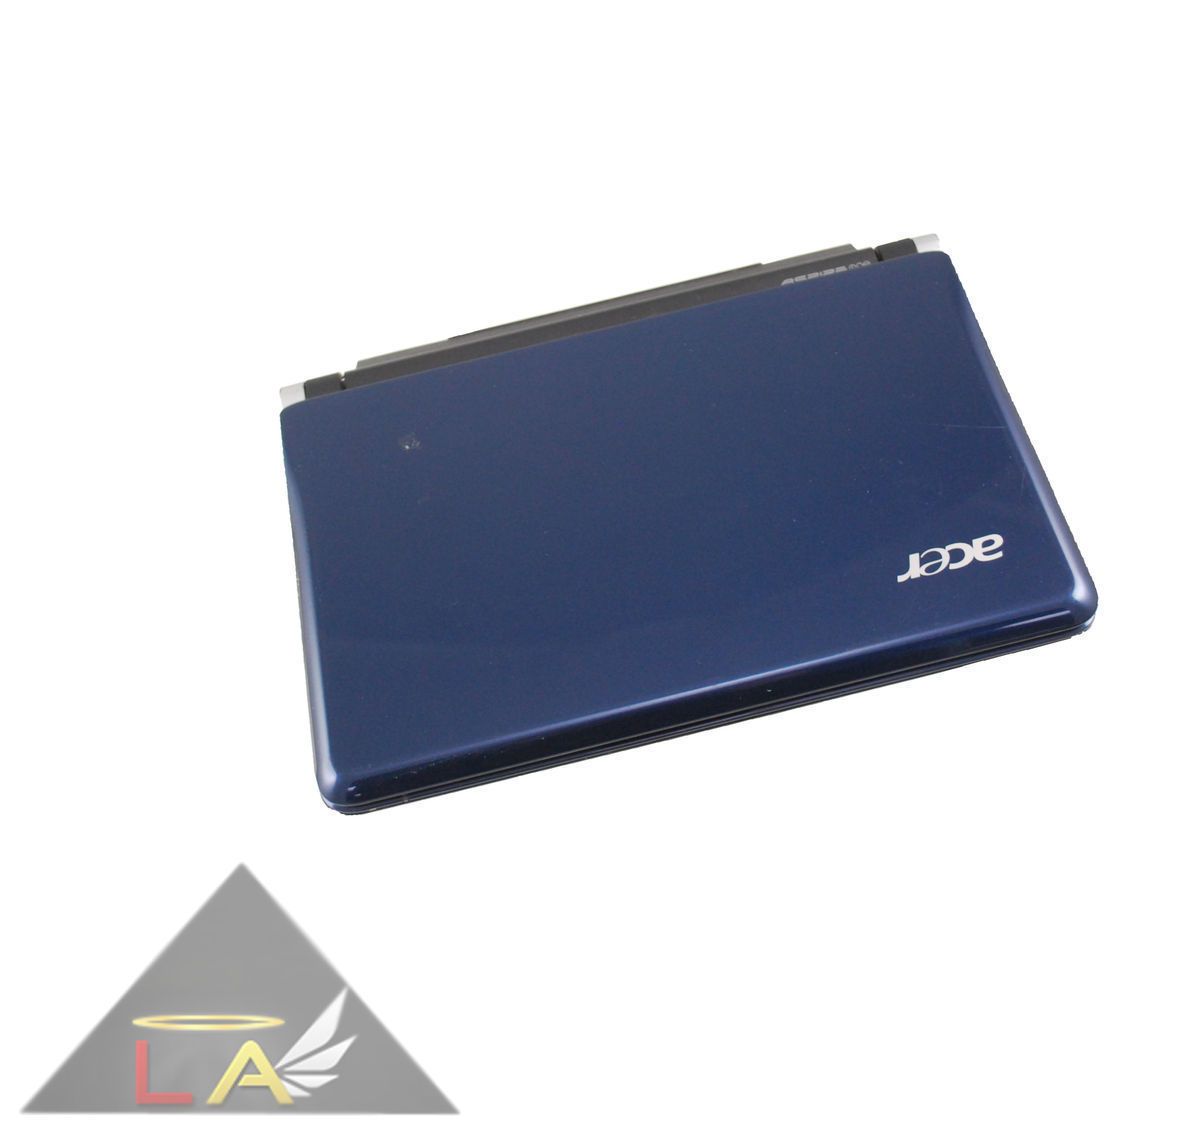 Acer Aspire D150 Blue Netbook Windows XP 160GB HDD 1GB RAM Intel N270 